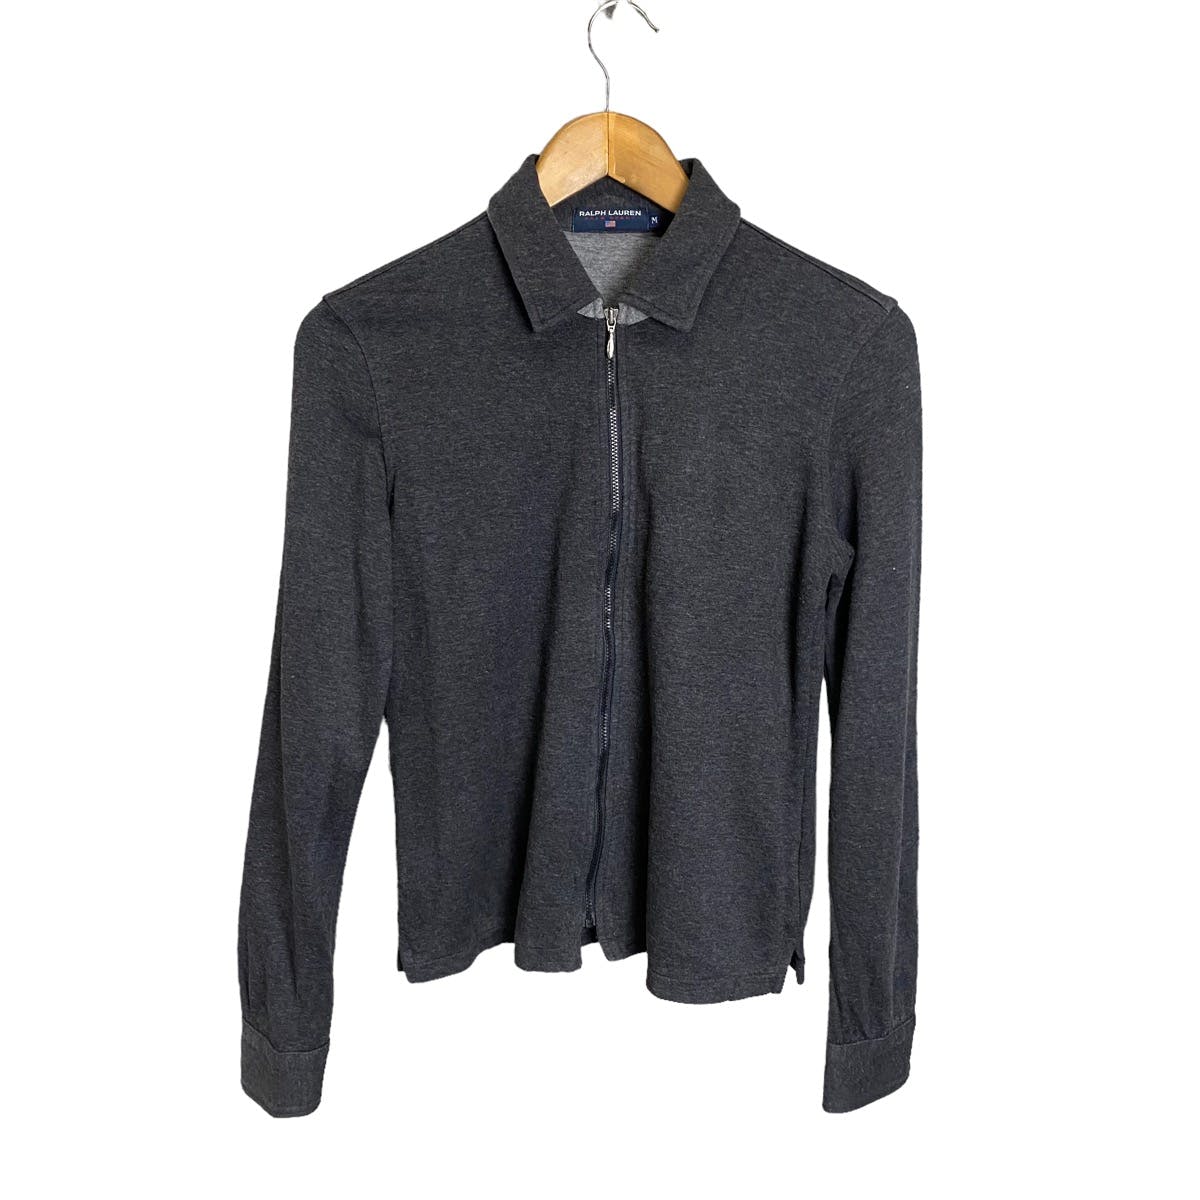 Ralph Lauren Polo Sport zipper shirt long sleeve - 1